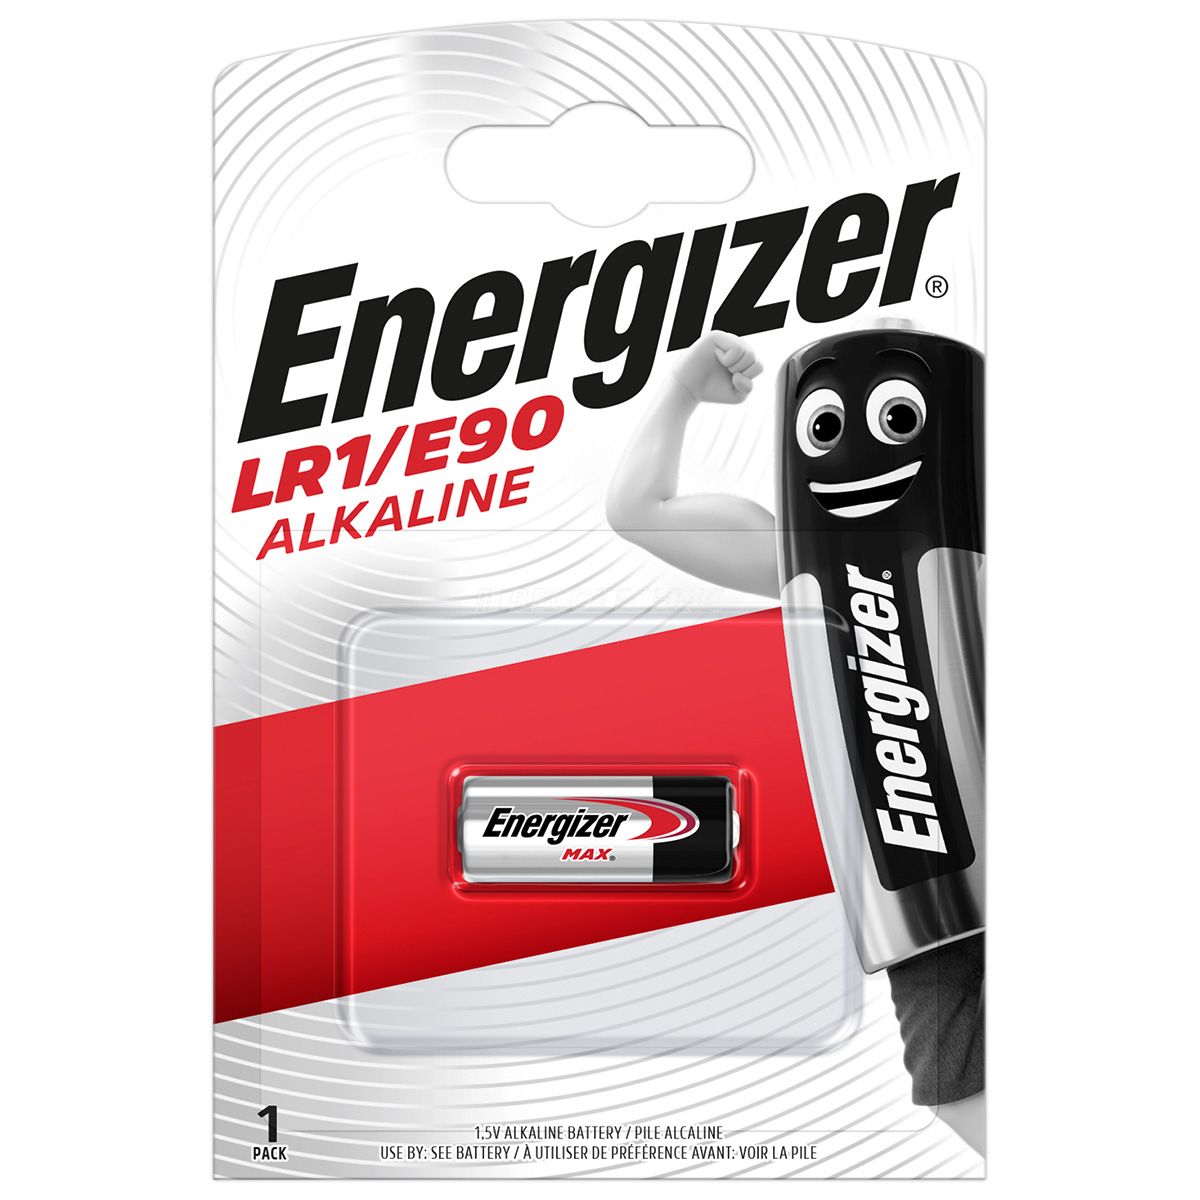 Energizer 1er Blister Lady 1,5 Volt Alkaline LR1/E90